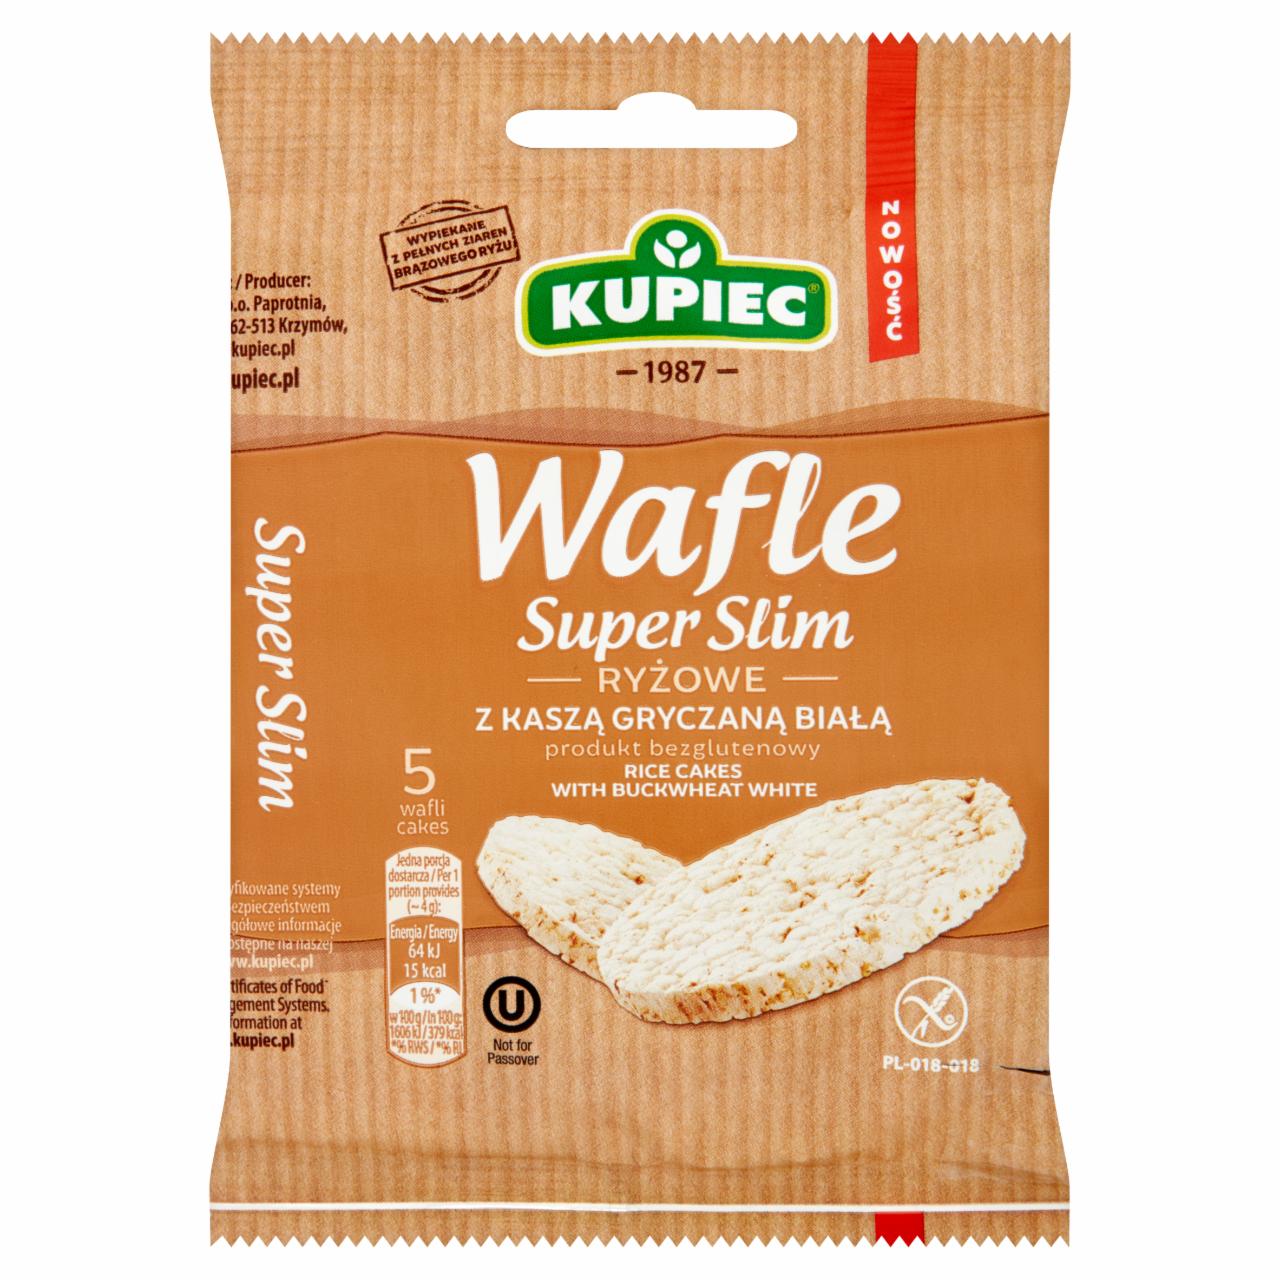 Zdjęcia - Kupiec Super Slim Wafle ryżowe z kaszą gryczaną białą 20 g (5 sztuk)